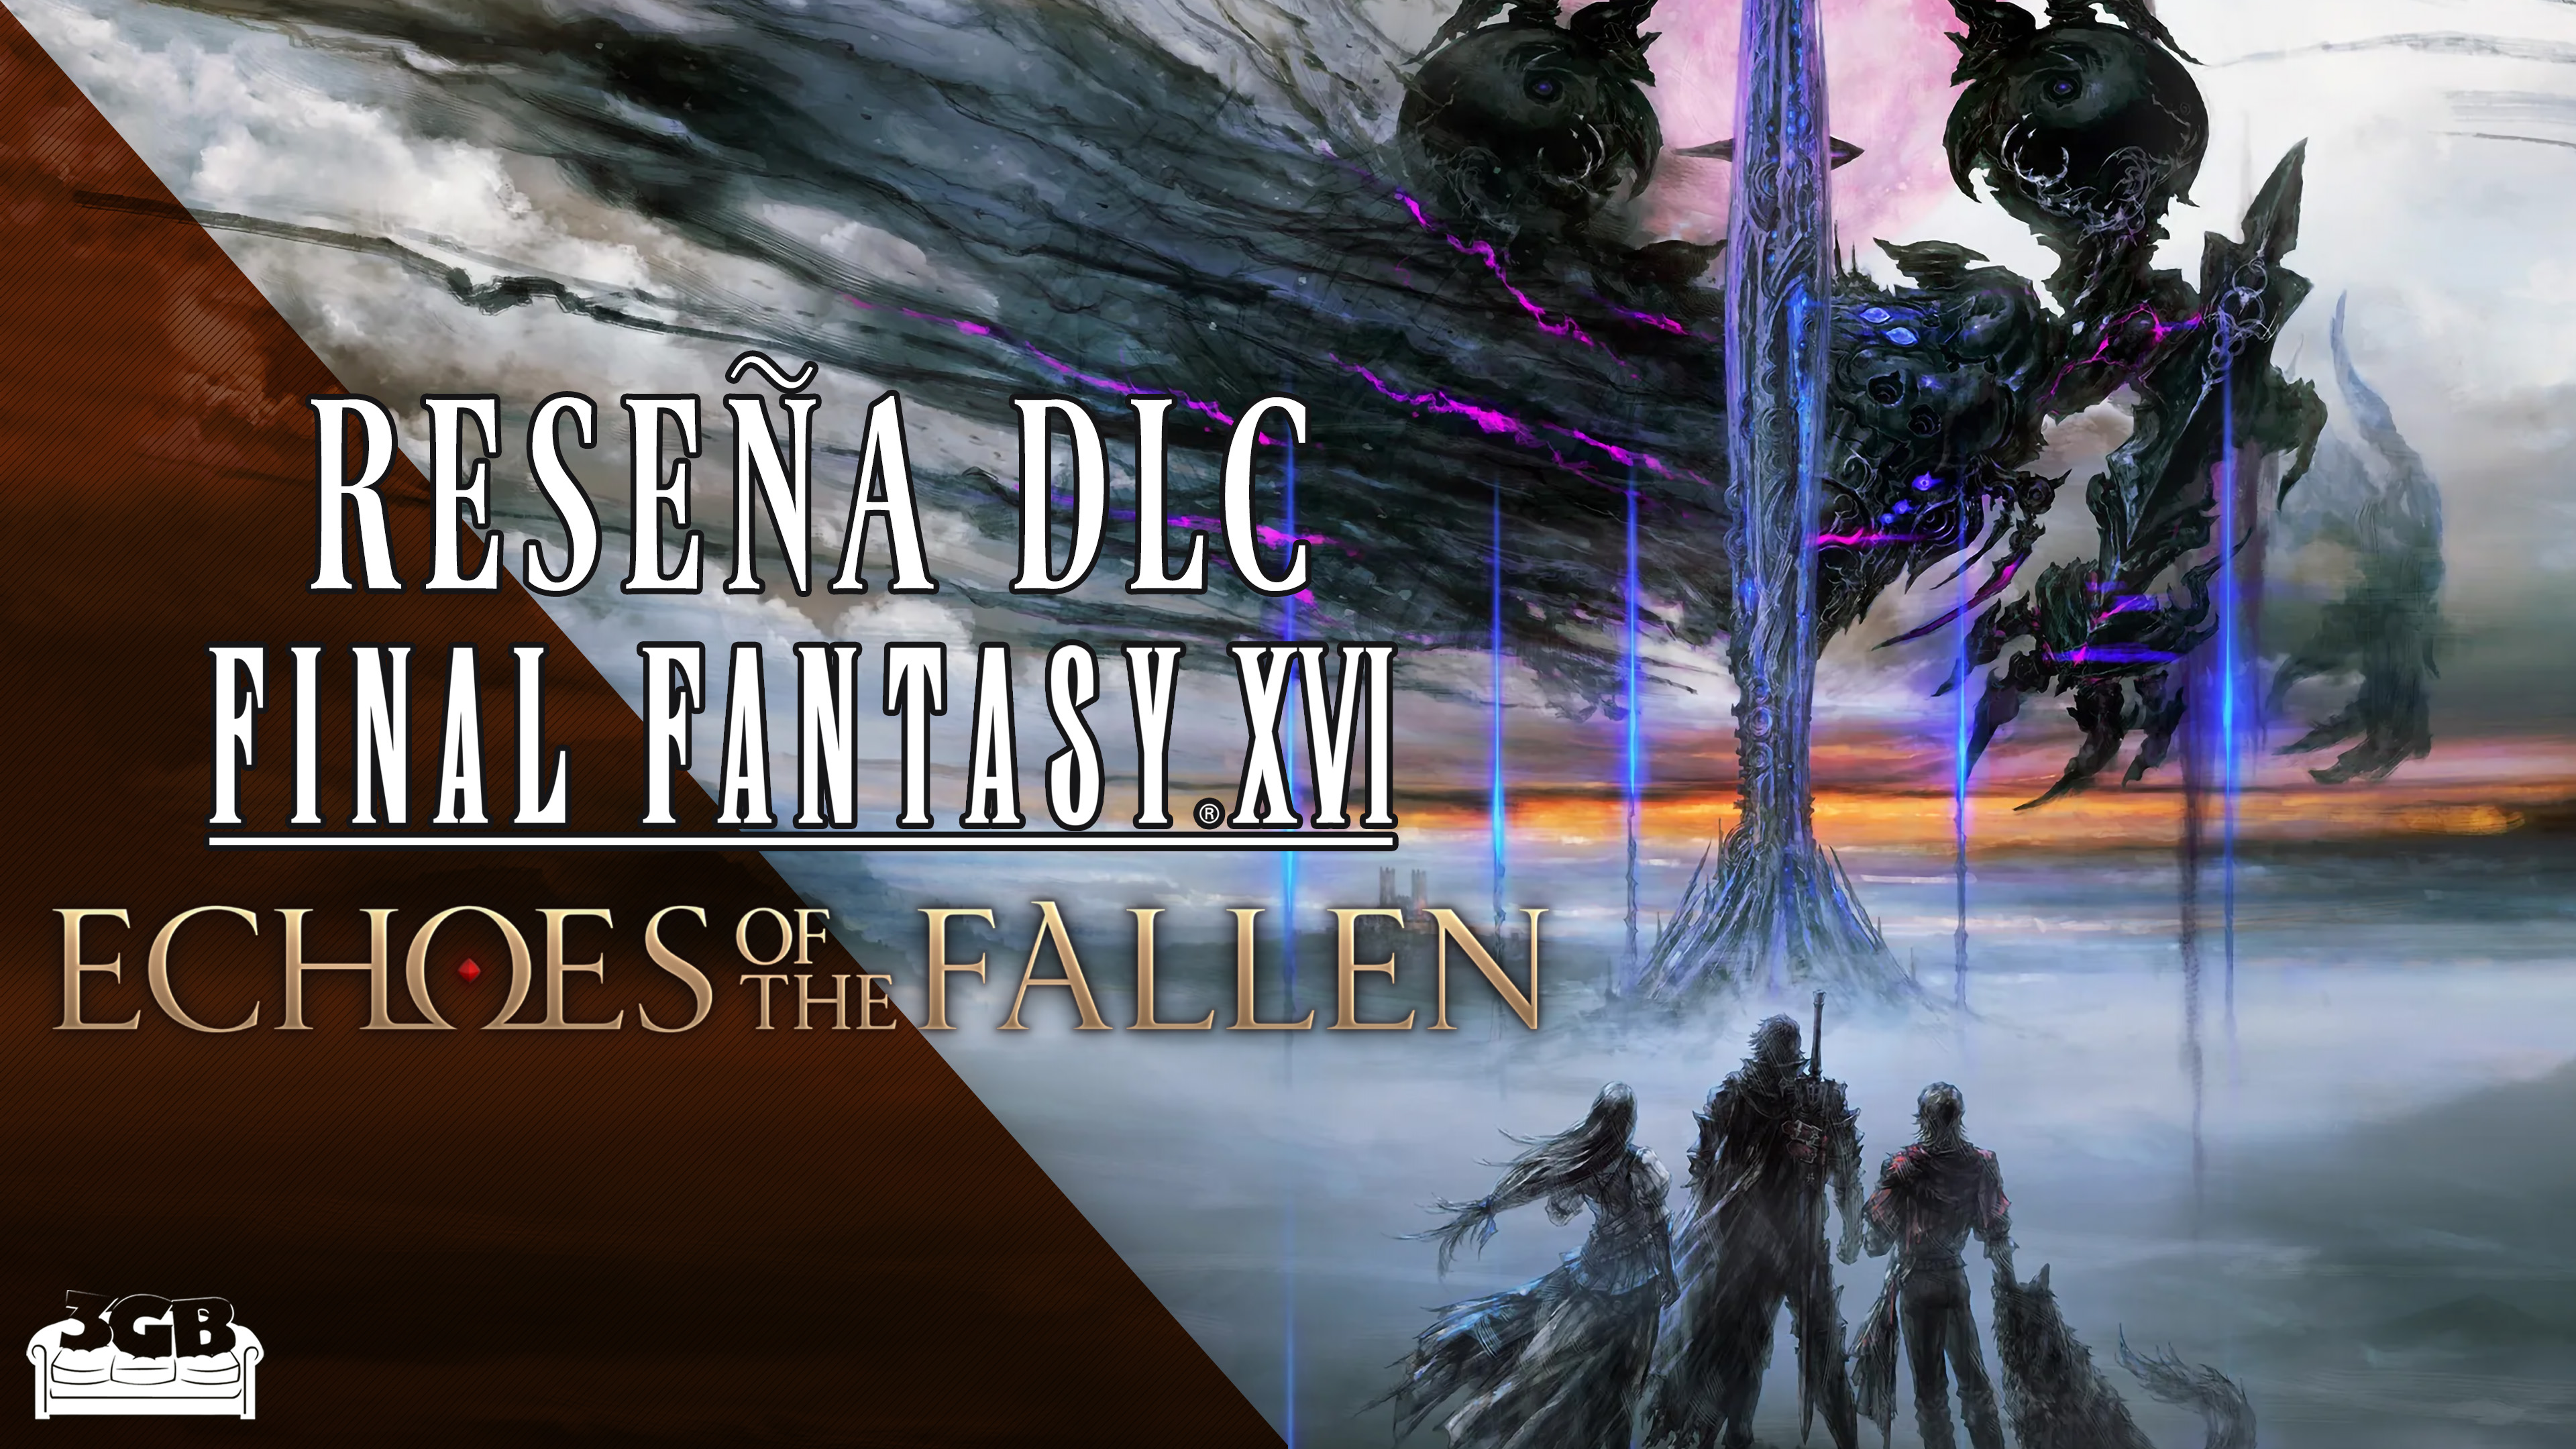 Reseña DLC Final Fantasy XVI – Echoes of the Fallen